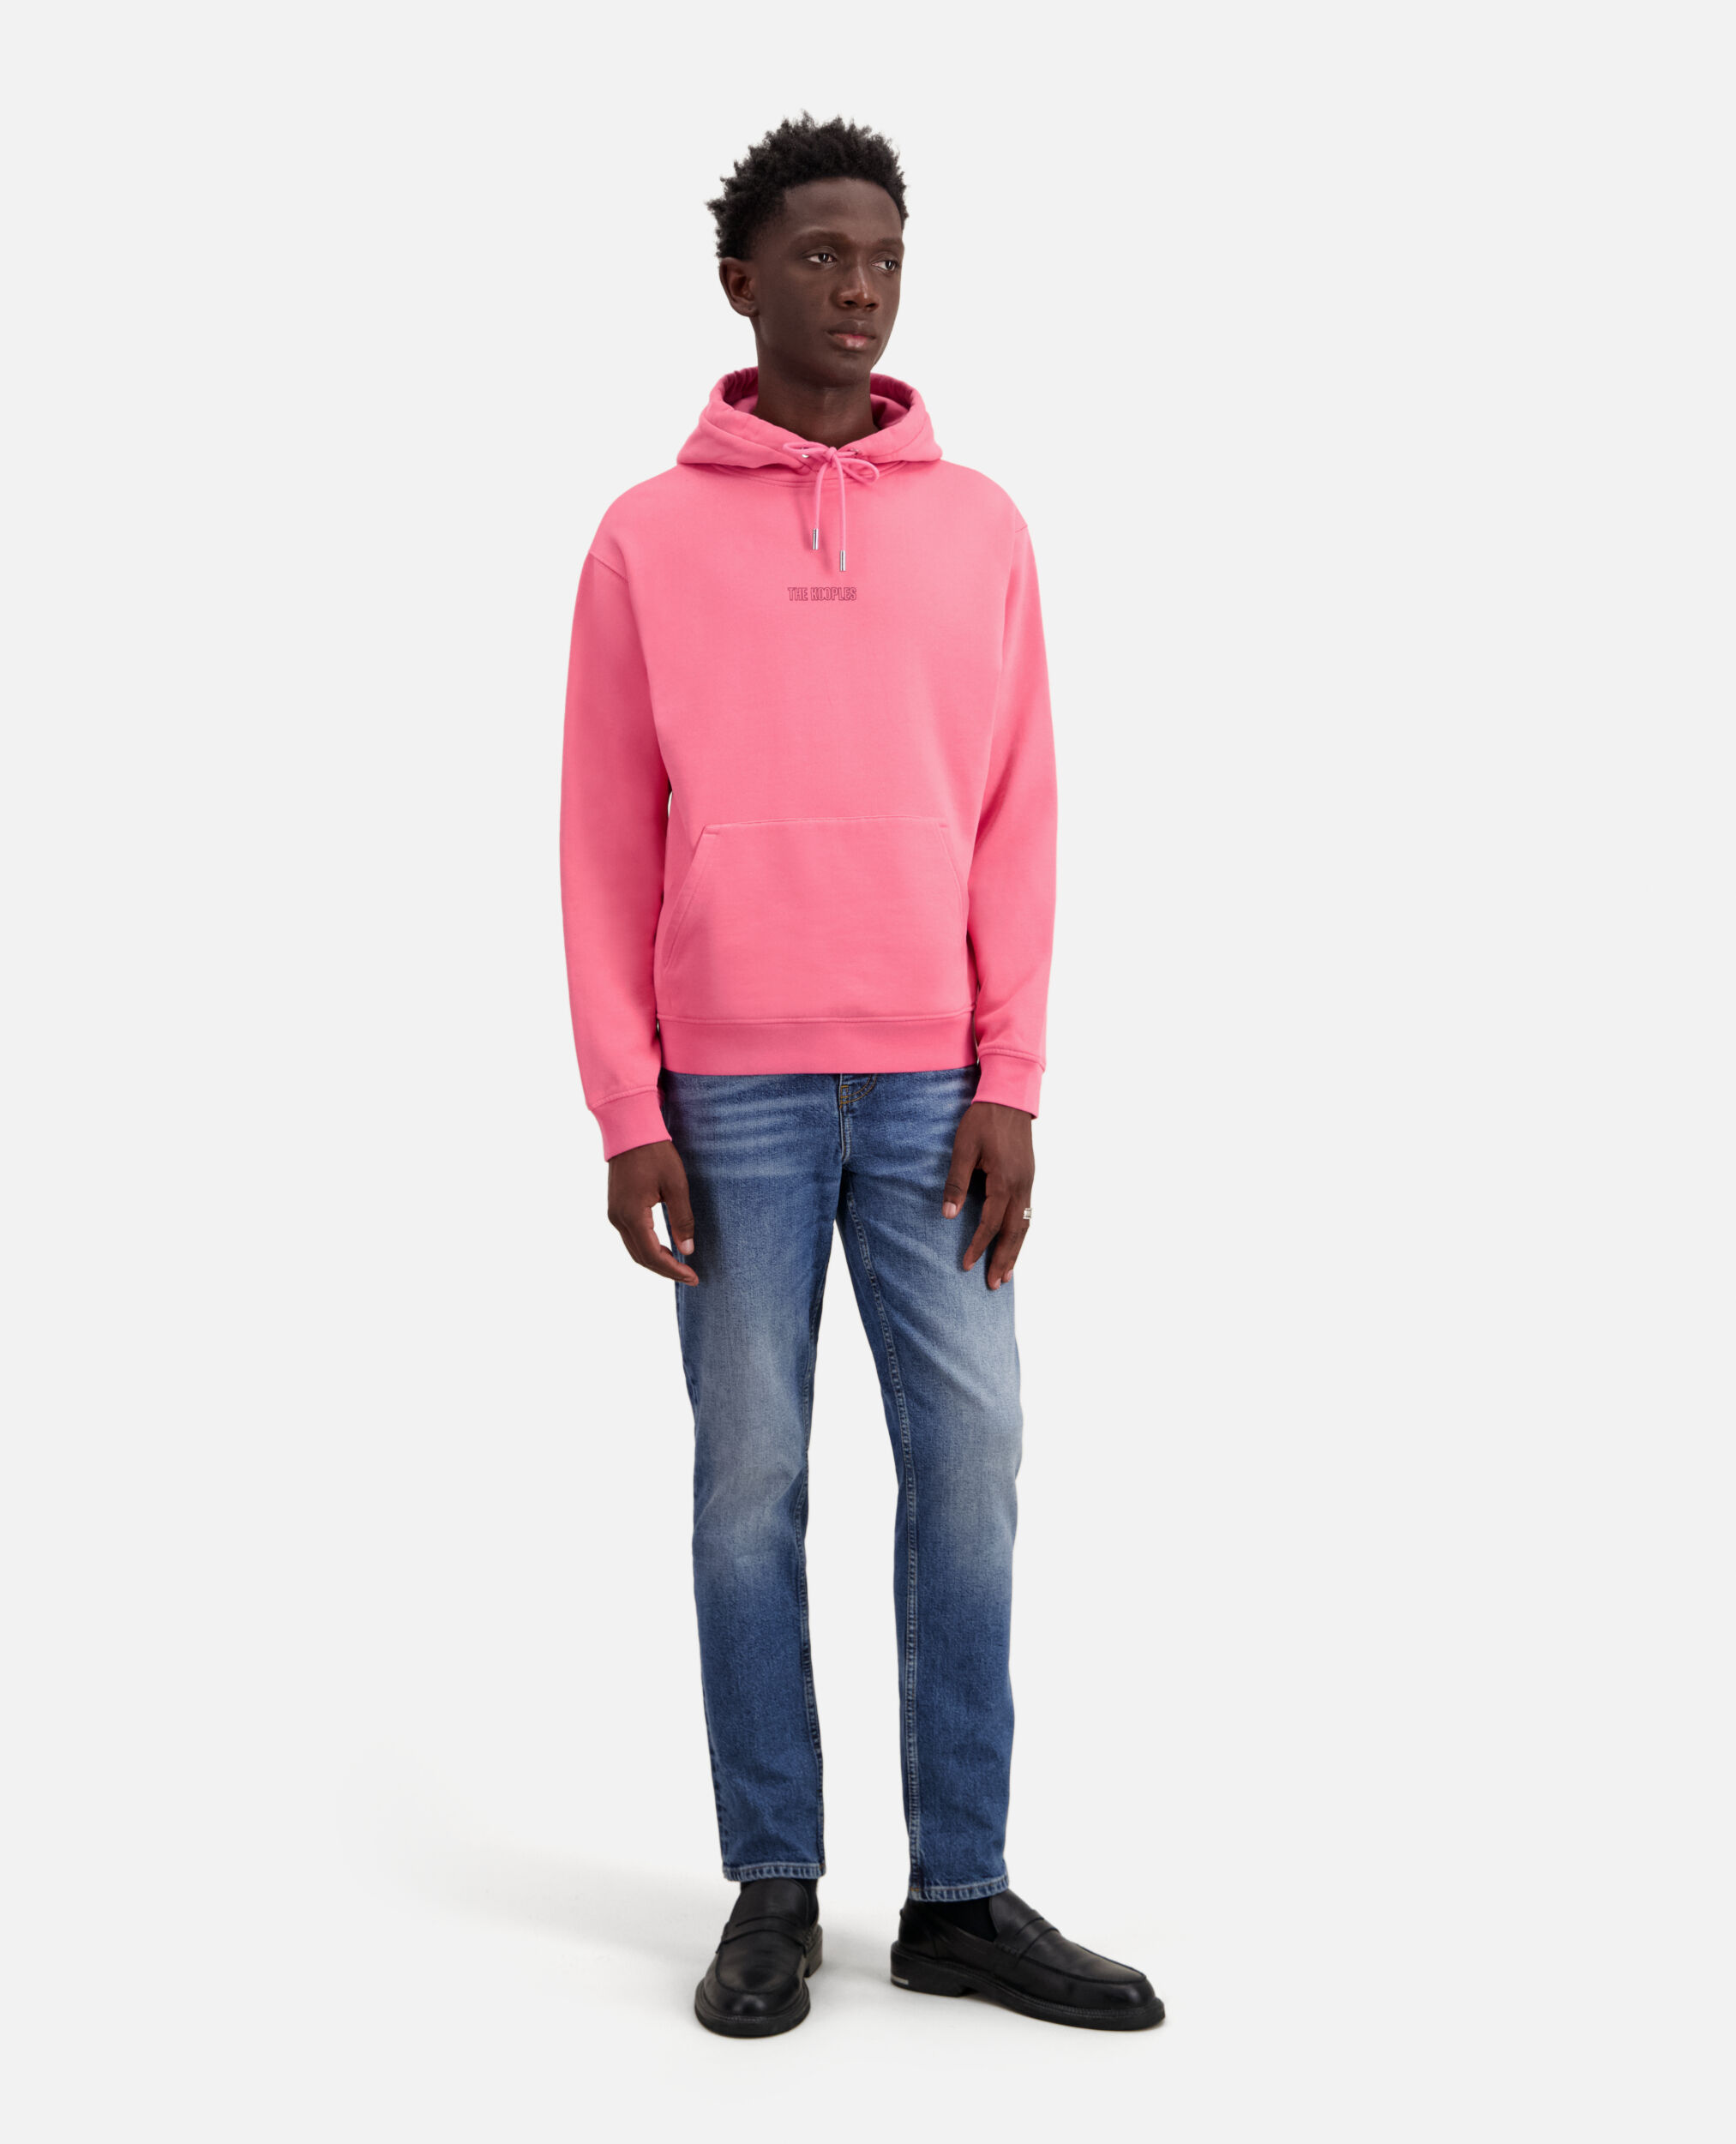 Sweatshirt Homme à capuche rose avec logo, OLD PINK, hi-res image number null